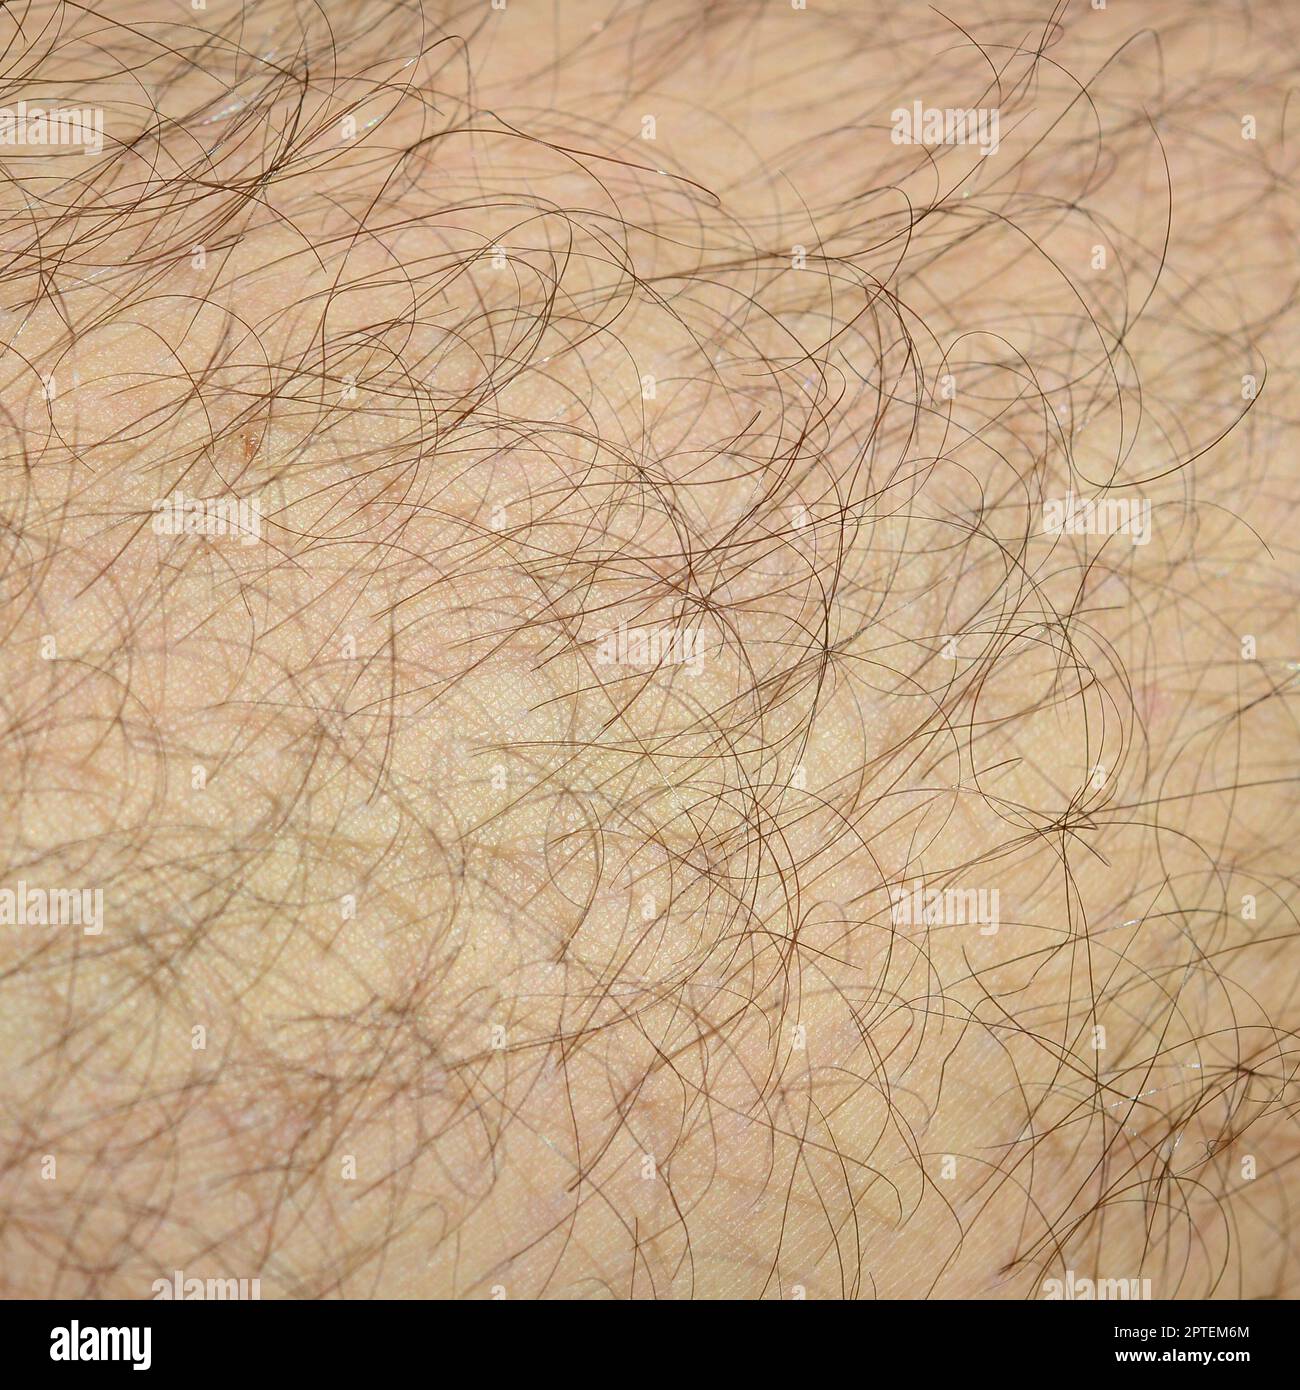 Primo piano dettaglio della pelle umana con i capelli. Mans gamba pelosa Foto Stock